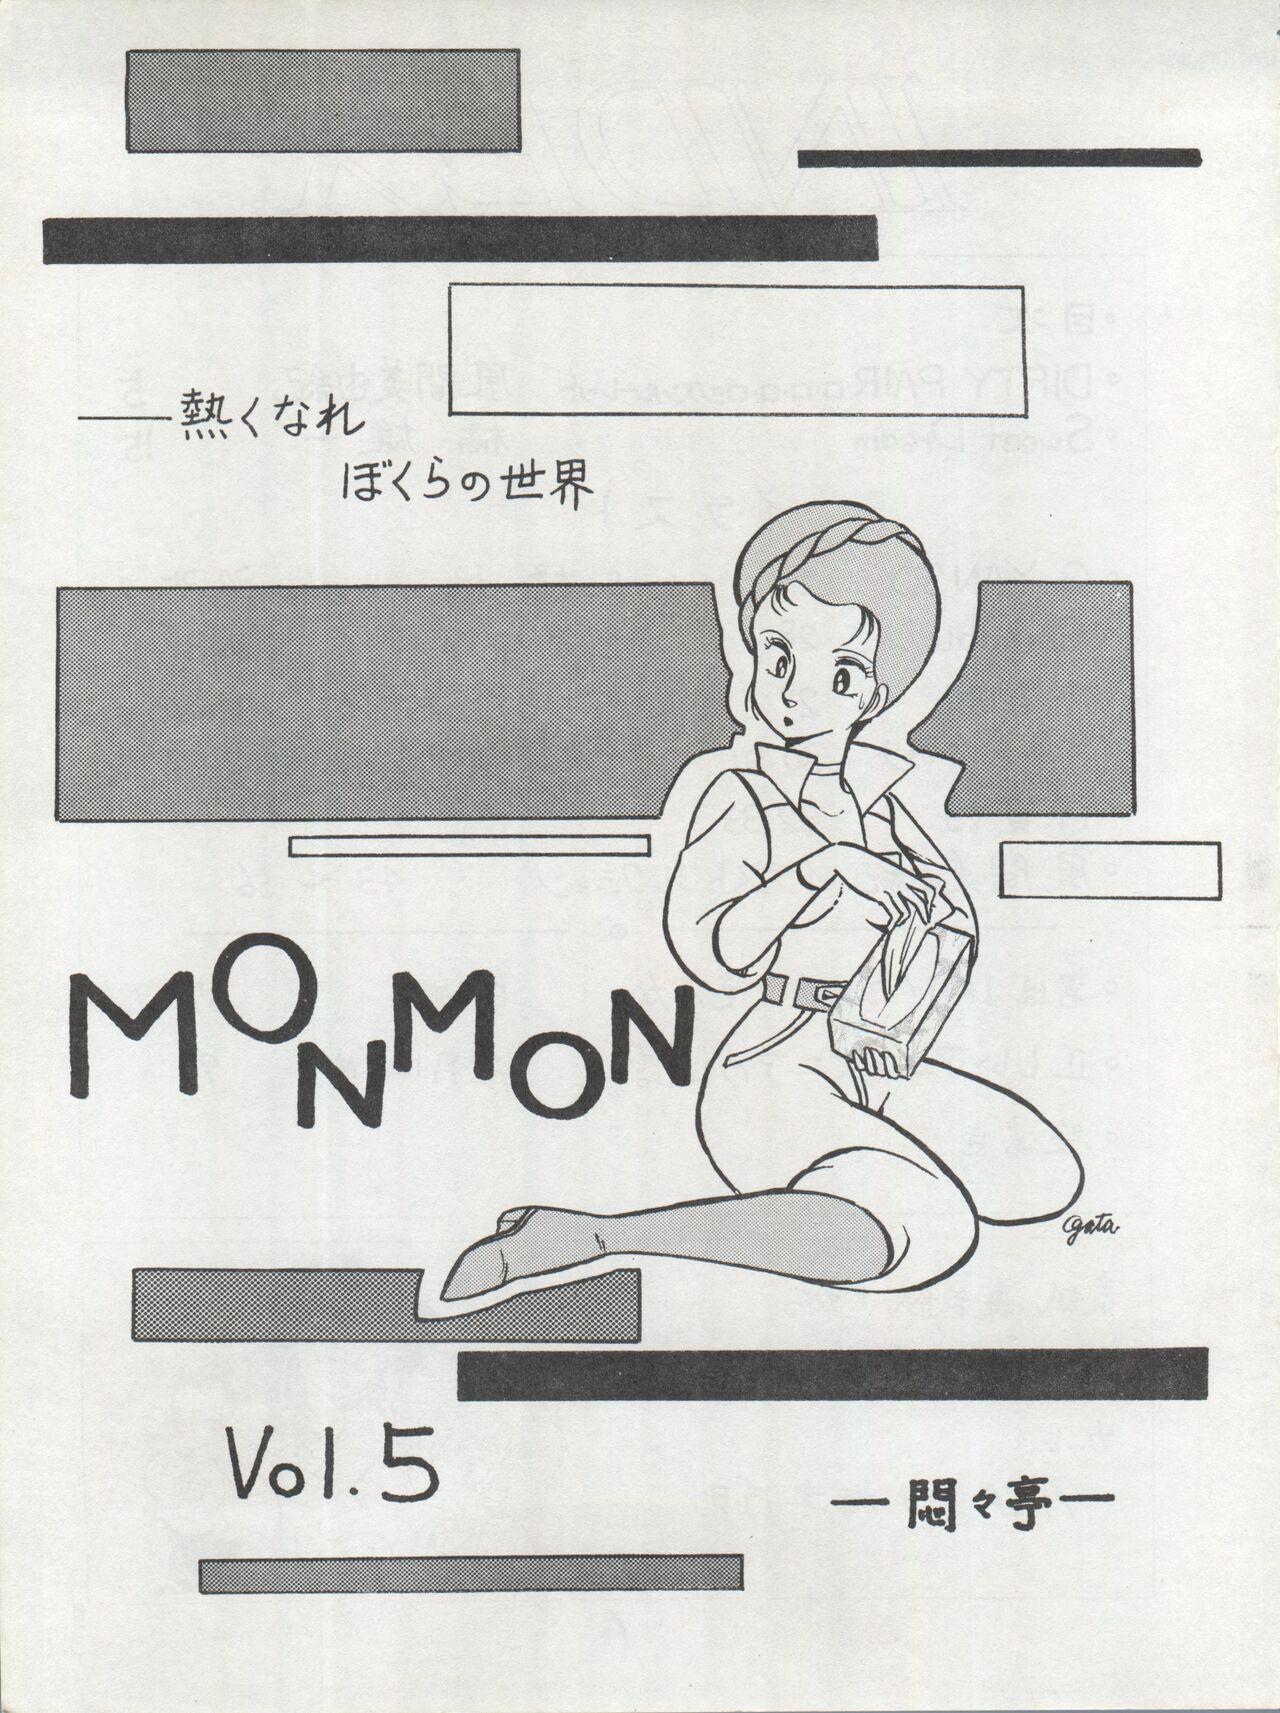 MoN MoN Vol. 5 2